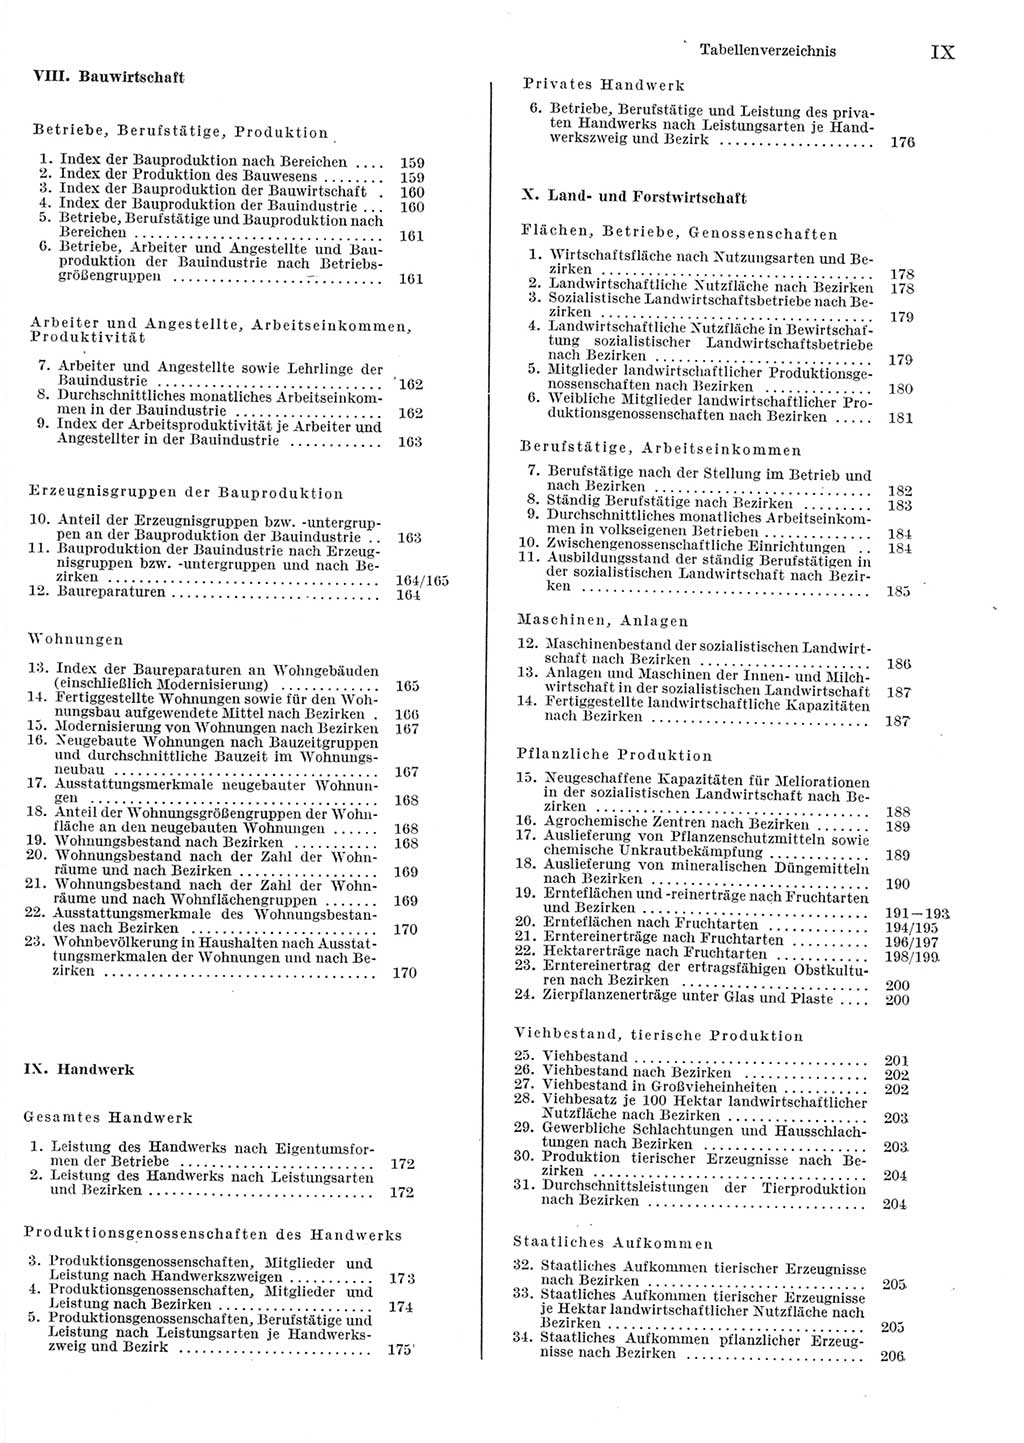 Statistisches Jahrbuch der Deutschen Demokratischen Republik (DDR) 1984, Seite 9 (Stat. Jb. DDR 1984, S. 9)